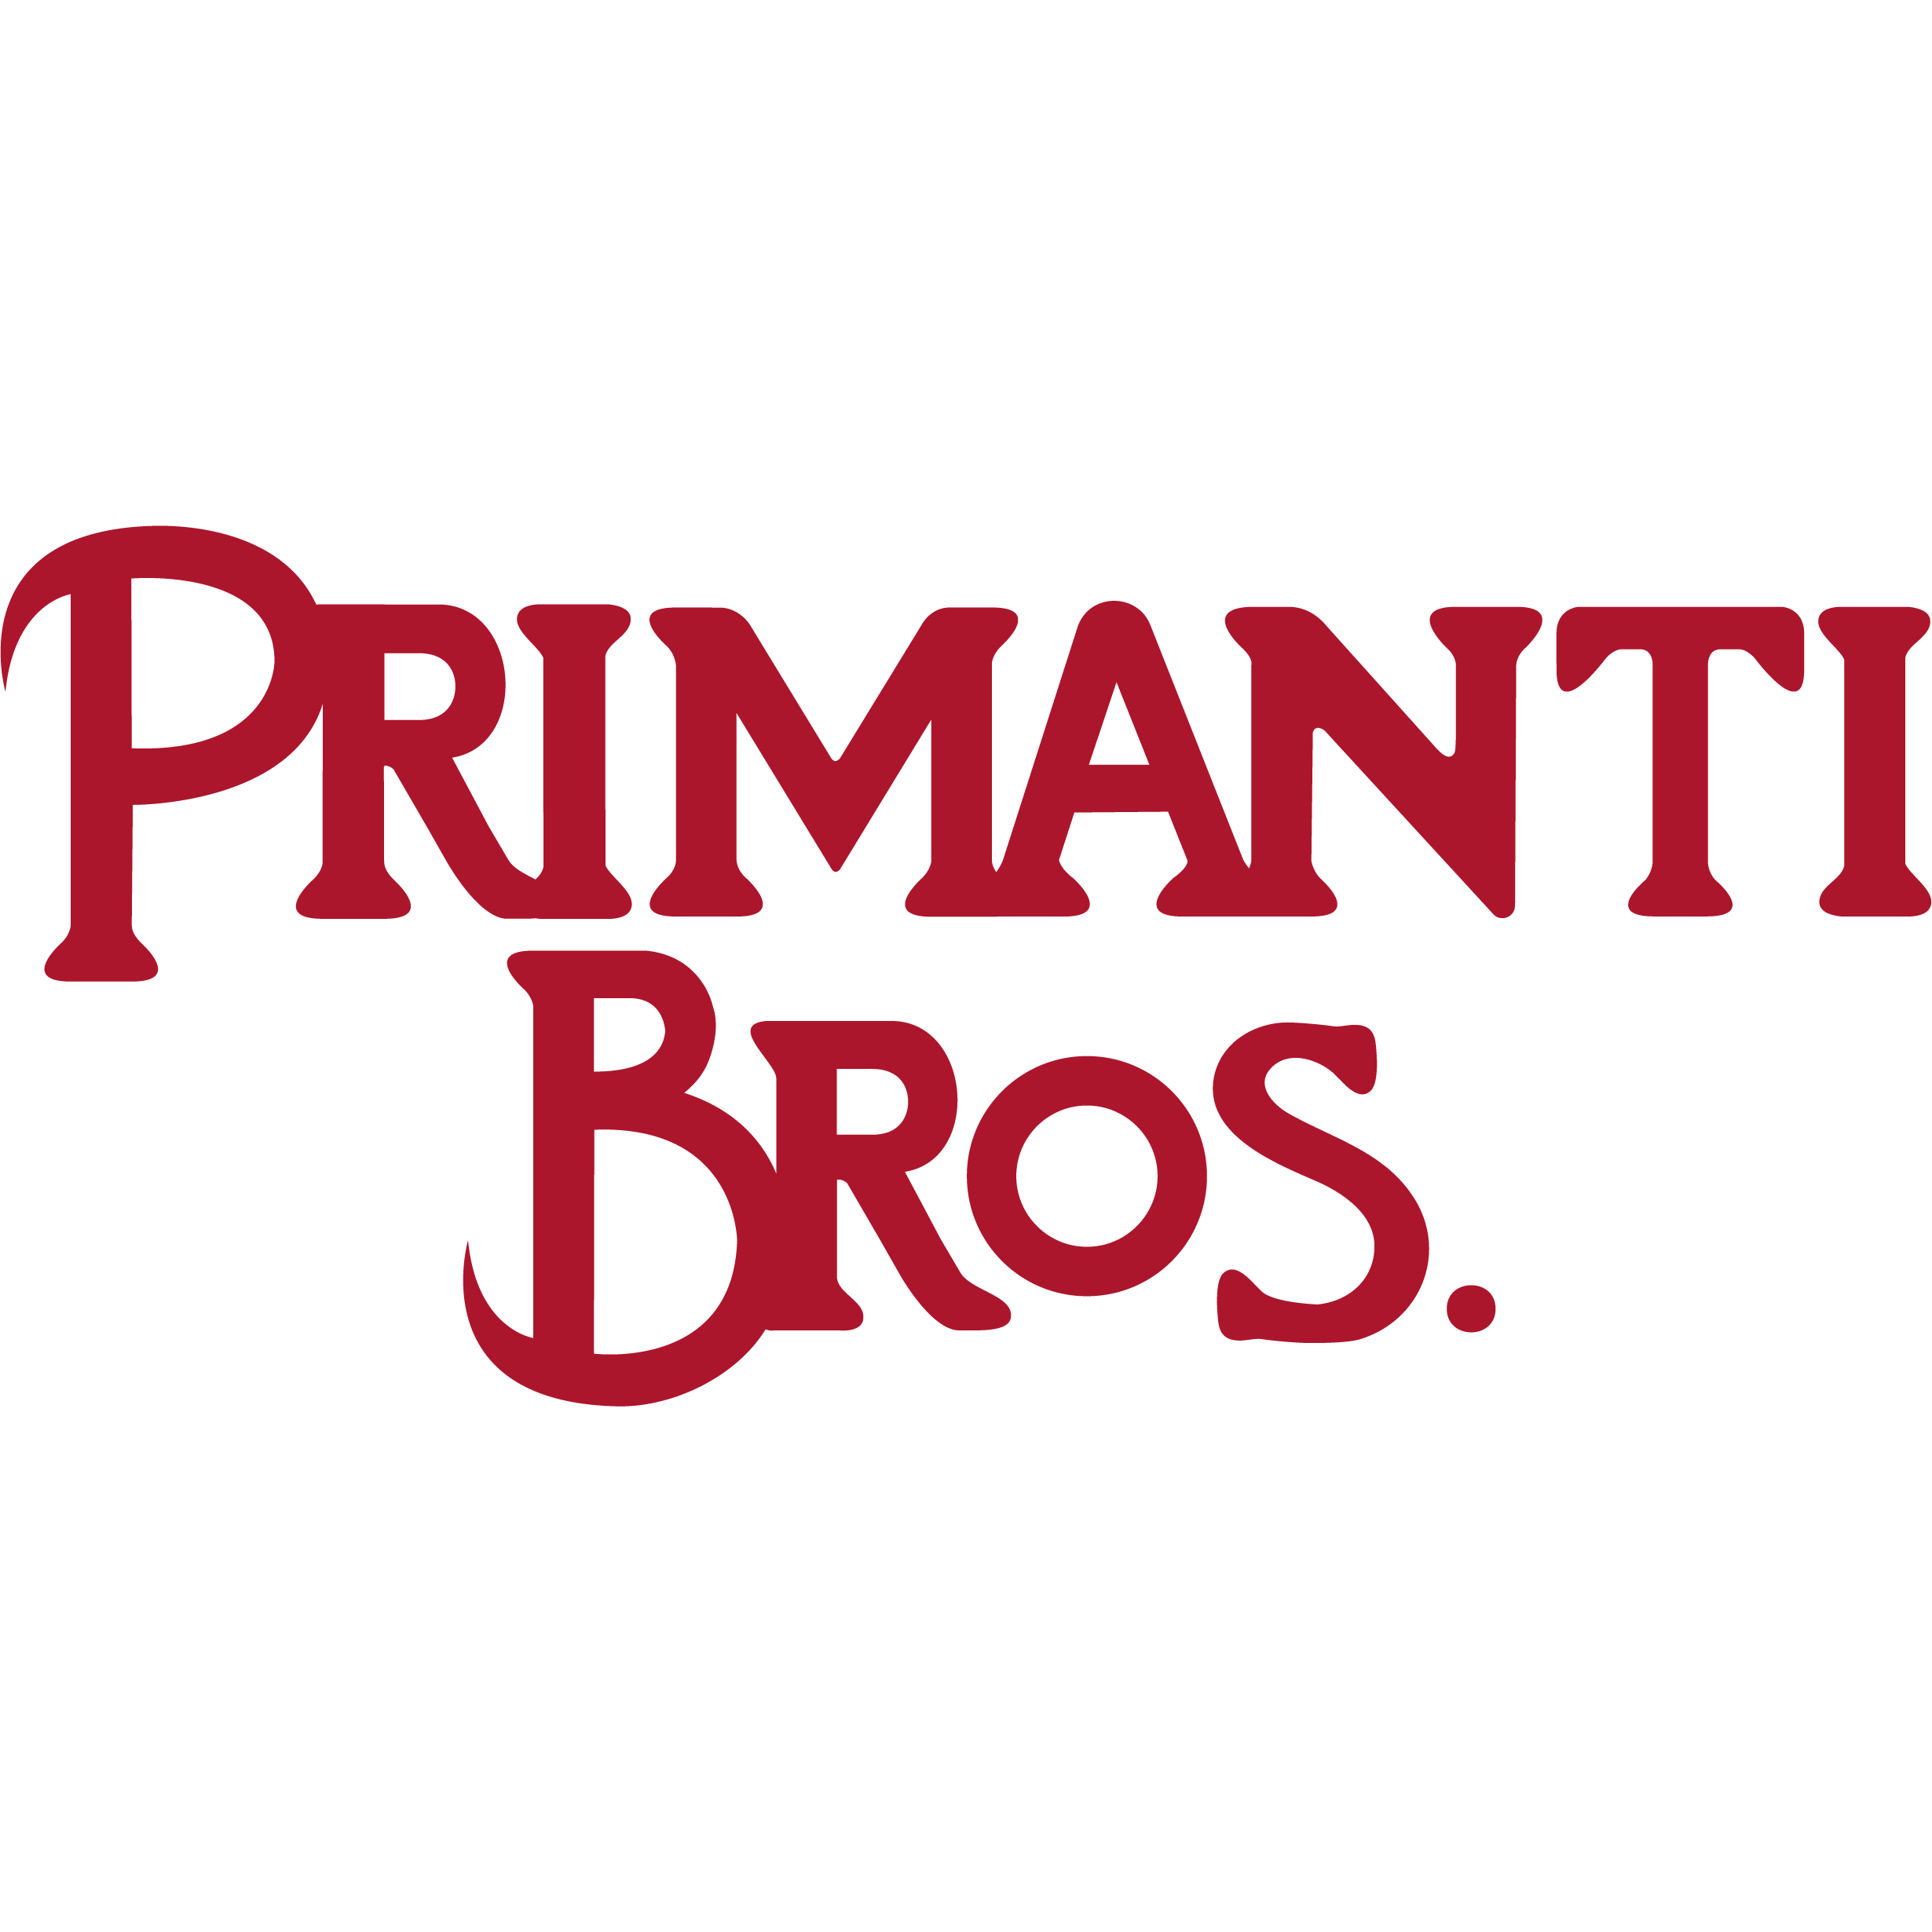 Primanti Bros. Restaurant and Bar - Clarksburg, WV 26301 - (304)918-9393 | ShowMeLocal.com